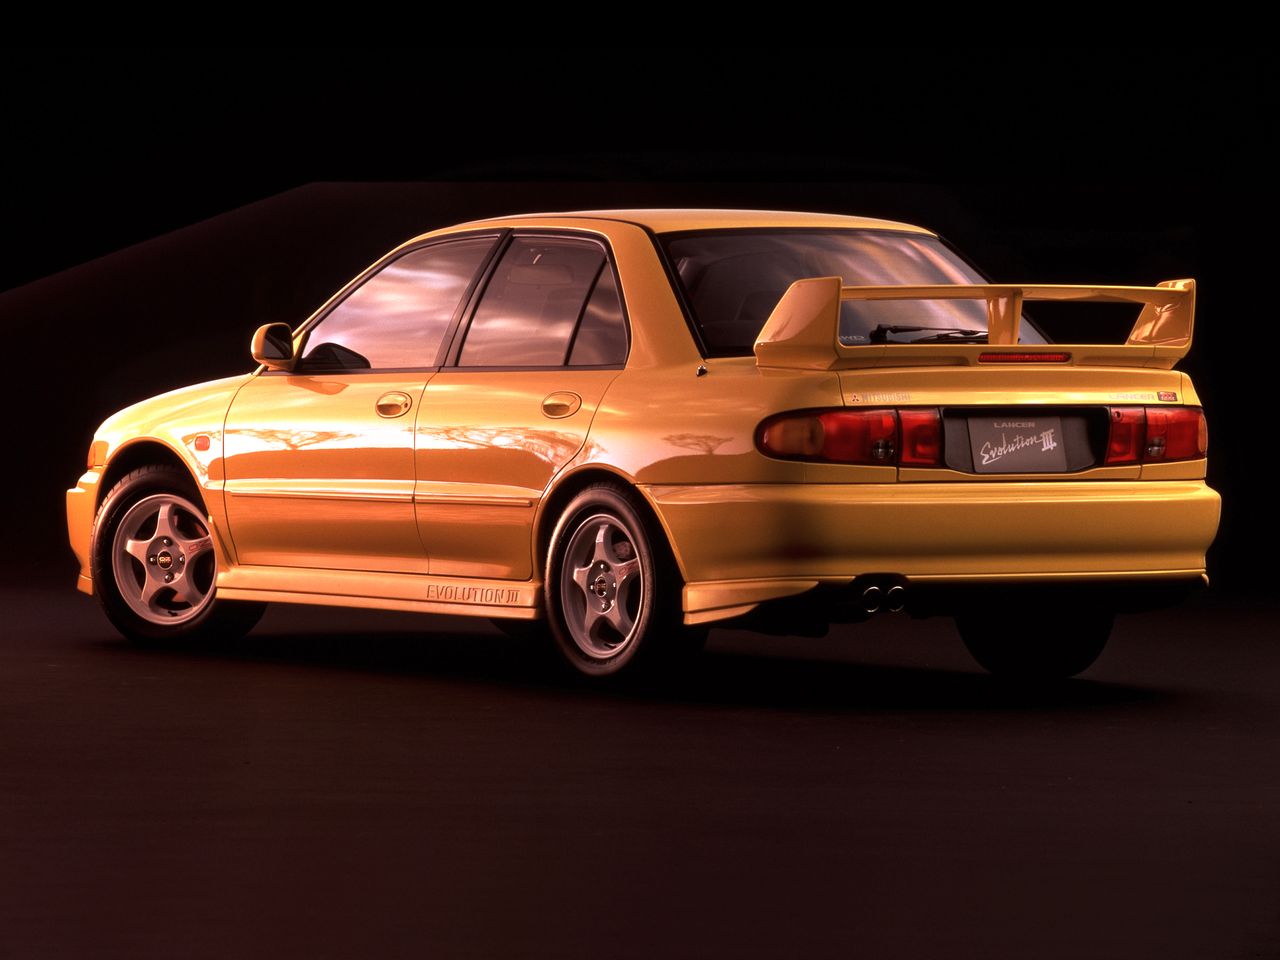 Mitsubishi 3000GT może i jest technicznym majstersztykiem, ale efektywnym samochodem sportowym był tak naprawdę Lancer Evolution. Następca topornego i ociężałego Galanta przyniósł marce cztery rajdowe tytuły w rajdowych mistrzostwach świata. W latach 90. to właśnie Japończycy dominowali w tym sporcie. W latach 1993-1999  marki z Kraju Kwitnącej Wiśni zdobywali mistrzostwa tak w klasyfikacji kierowców jak i konstruktorów. Mitsubishi tylko raz tryumfowało wśród producentów, za to Tommi Mäkinen czterokrotnie z rzędu niszczył swoich rywali w niezwykle mocnej stawce. Gdyby miał lepszego partnera zespołowego, prawdopodobnie Mitsubishi byłoby niepokonane.